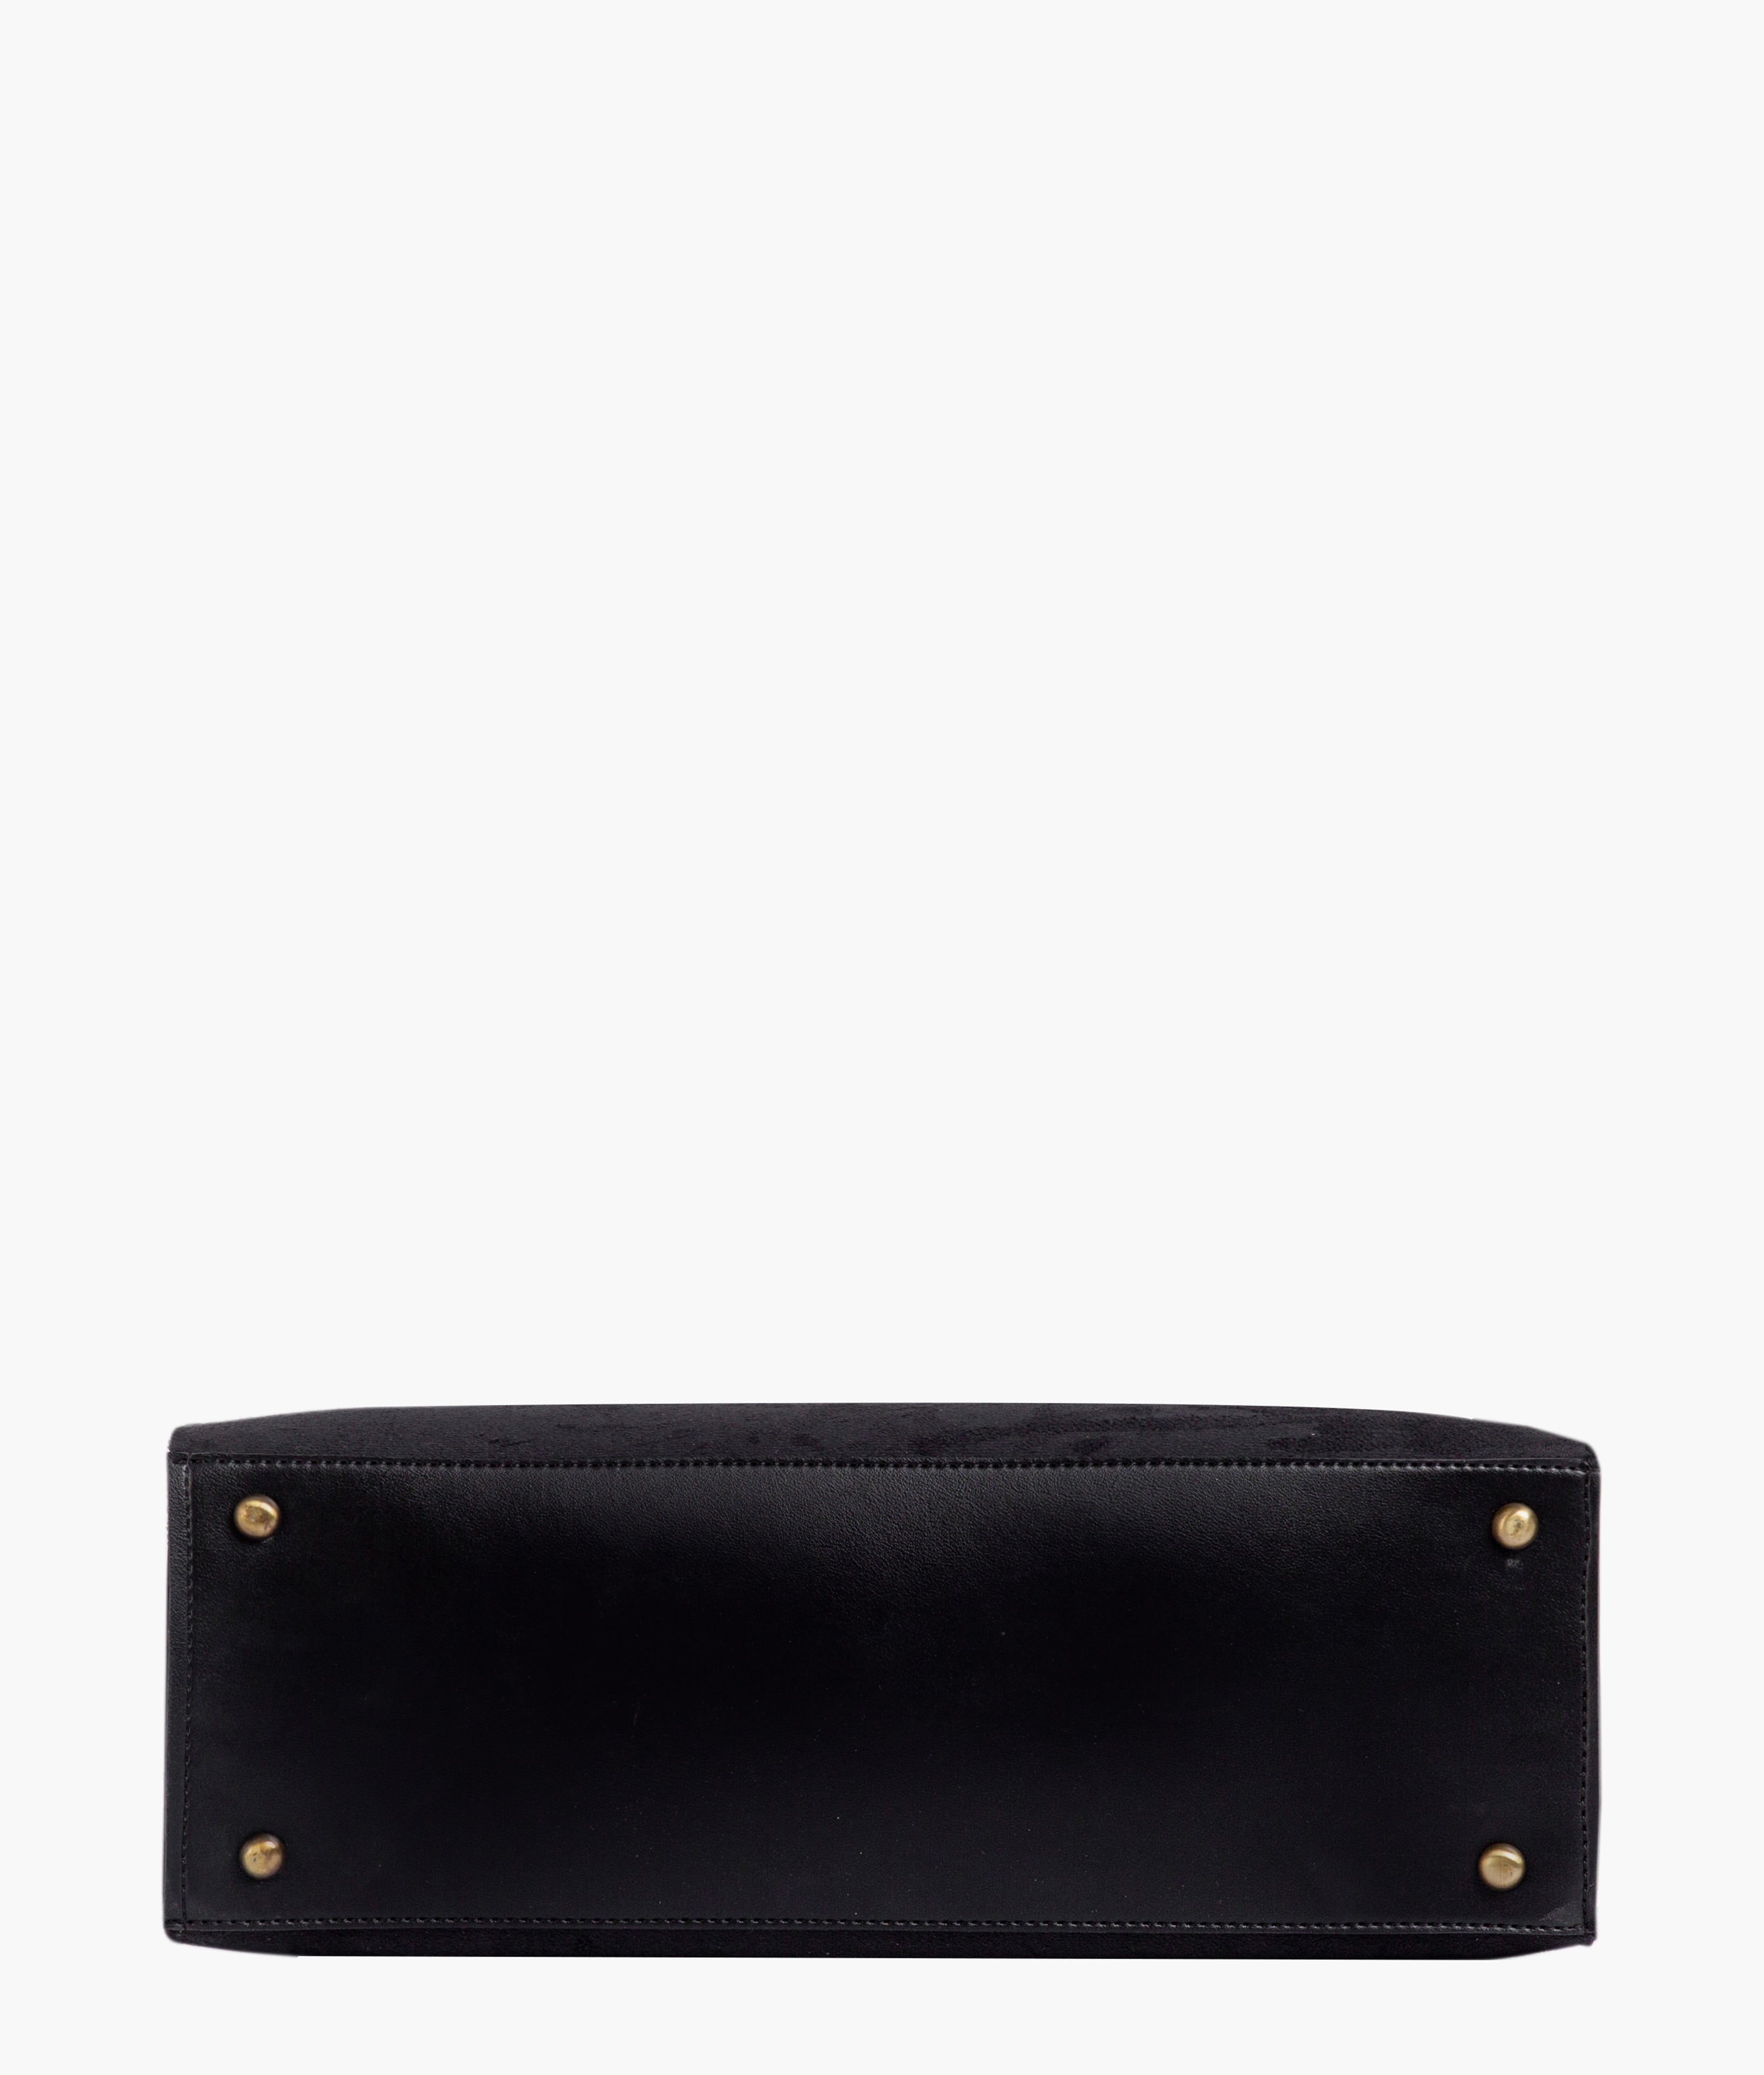 Black suede workplace handbag